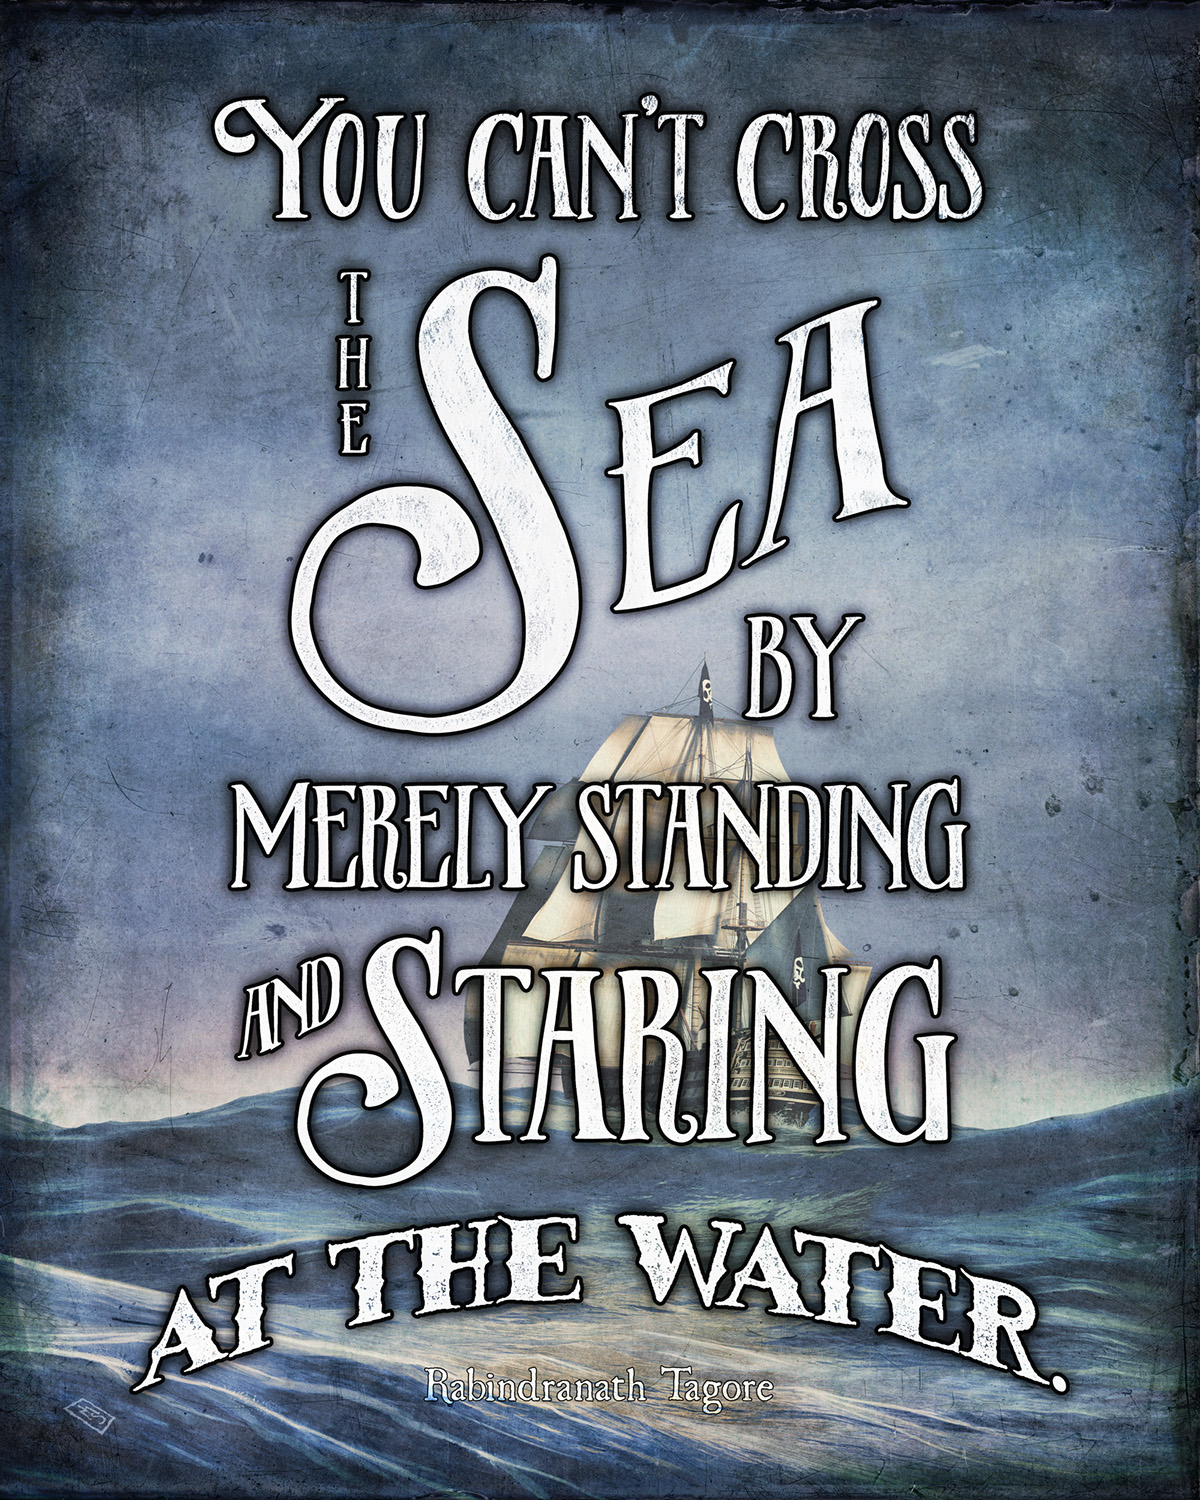 pirate ship motivational motivator poster art nautical Ocean